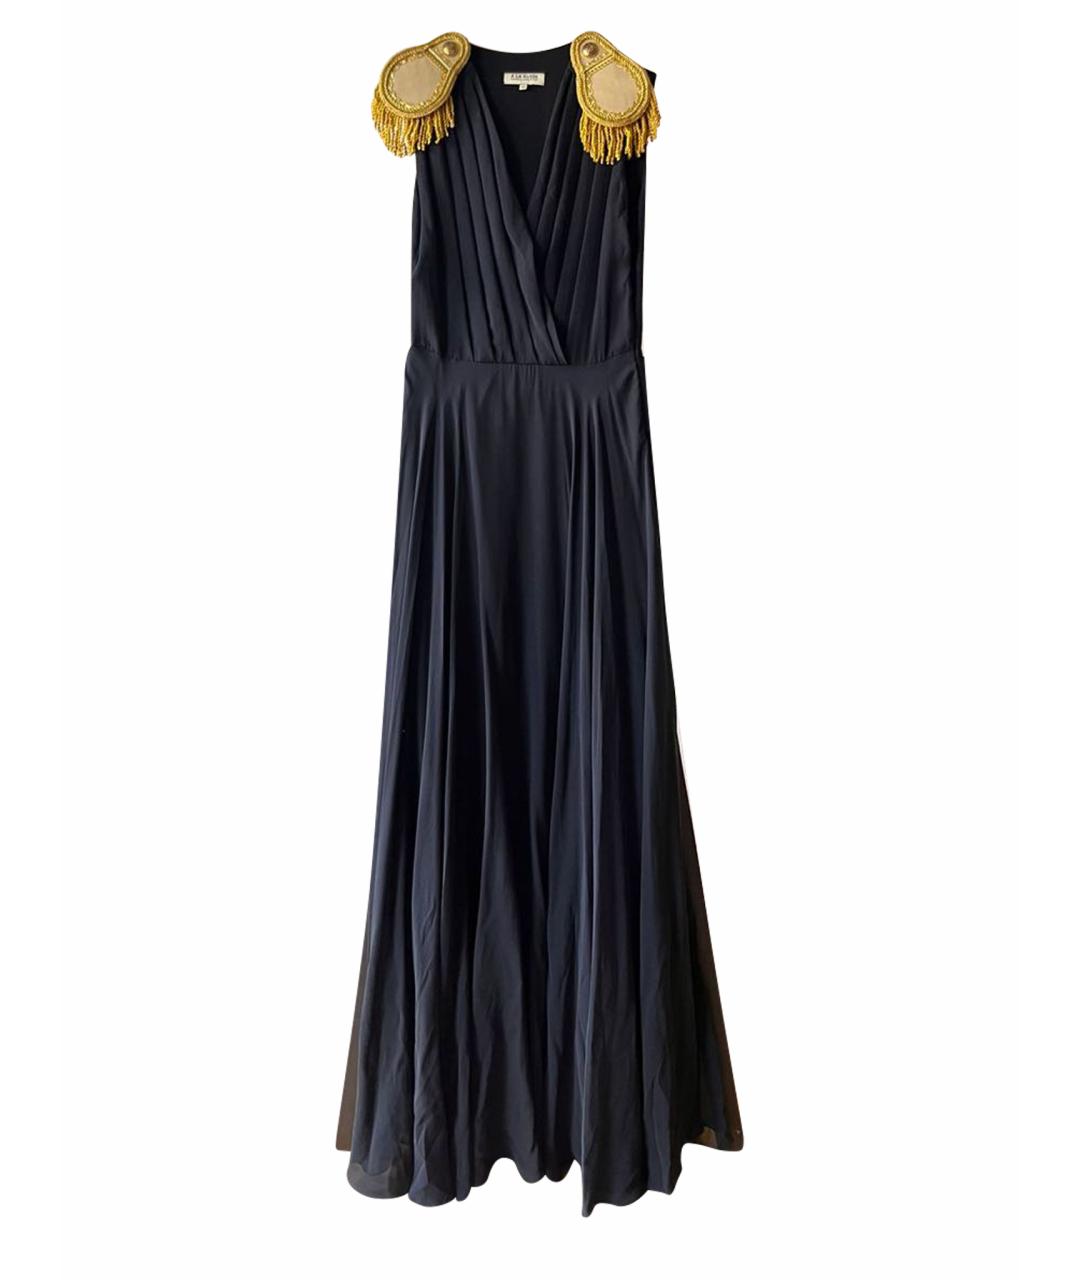 A LA RUSSE Черное шелковое повседневное платье, фото 1